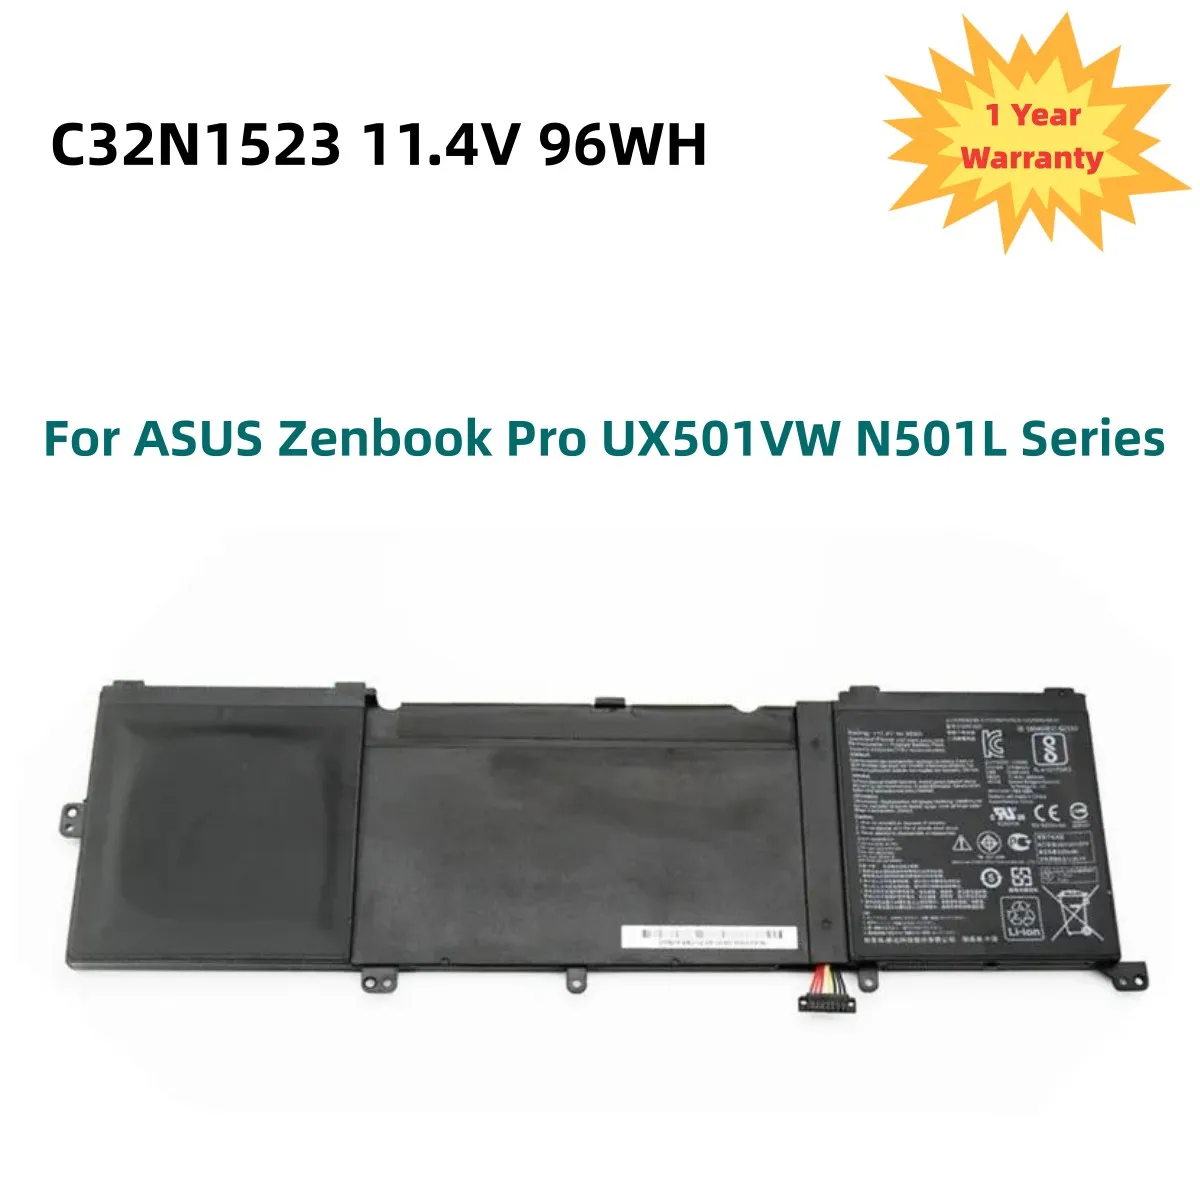 C32N1523 Laptop Battery For ASUS Zenbook Pro UX501VW N501L Series C32N1523  11.4V 96WH